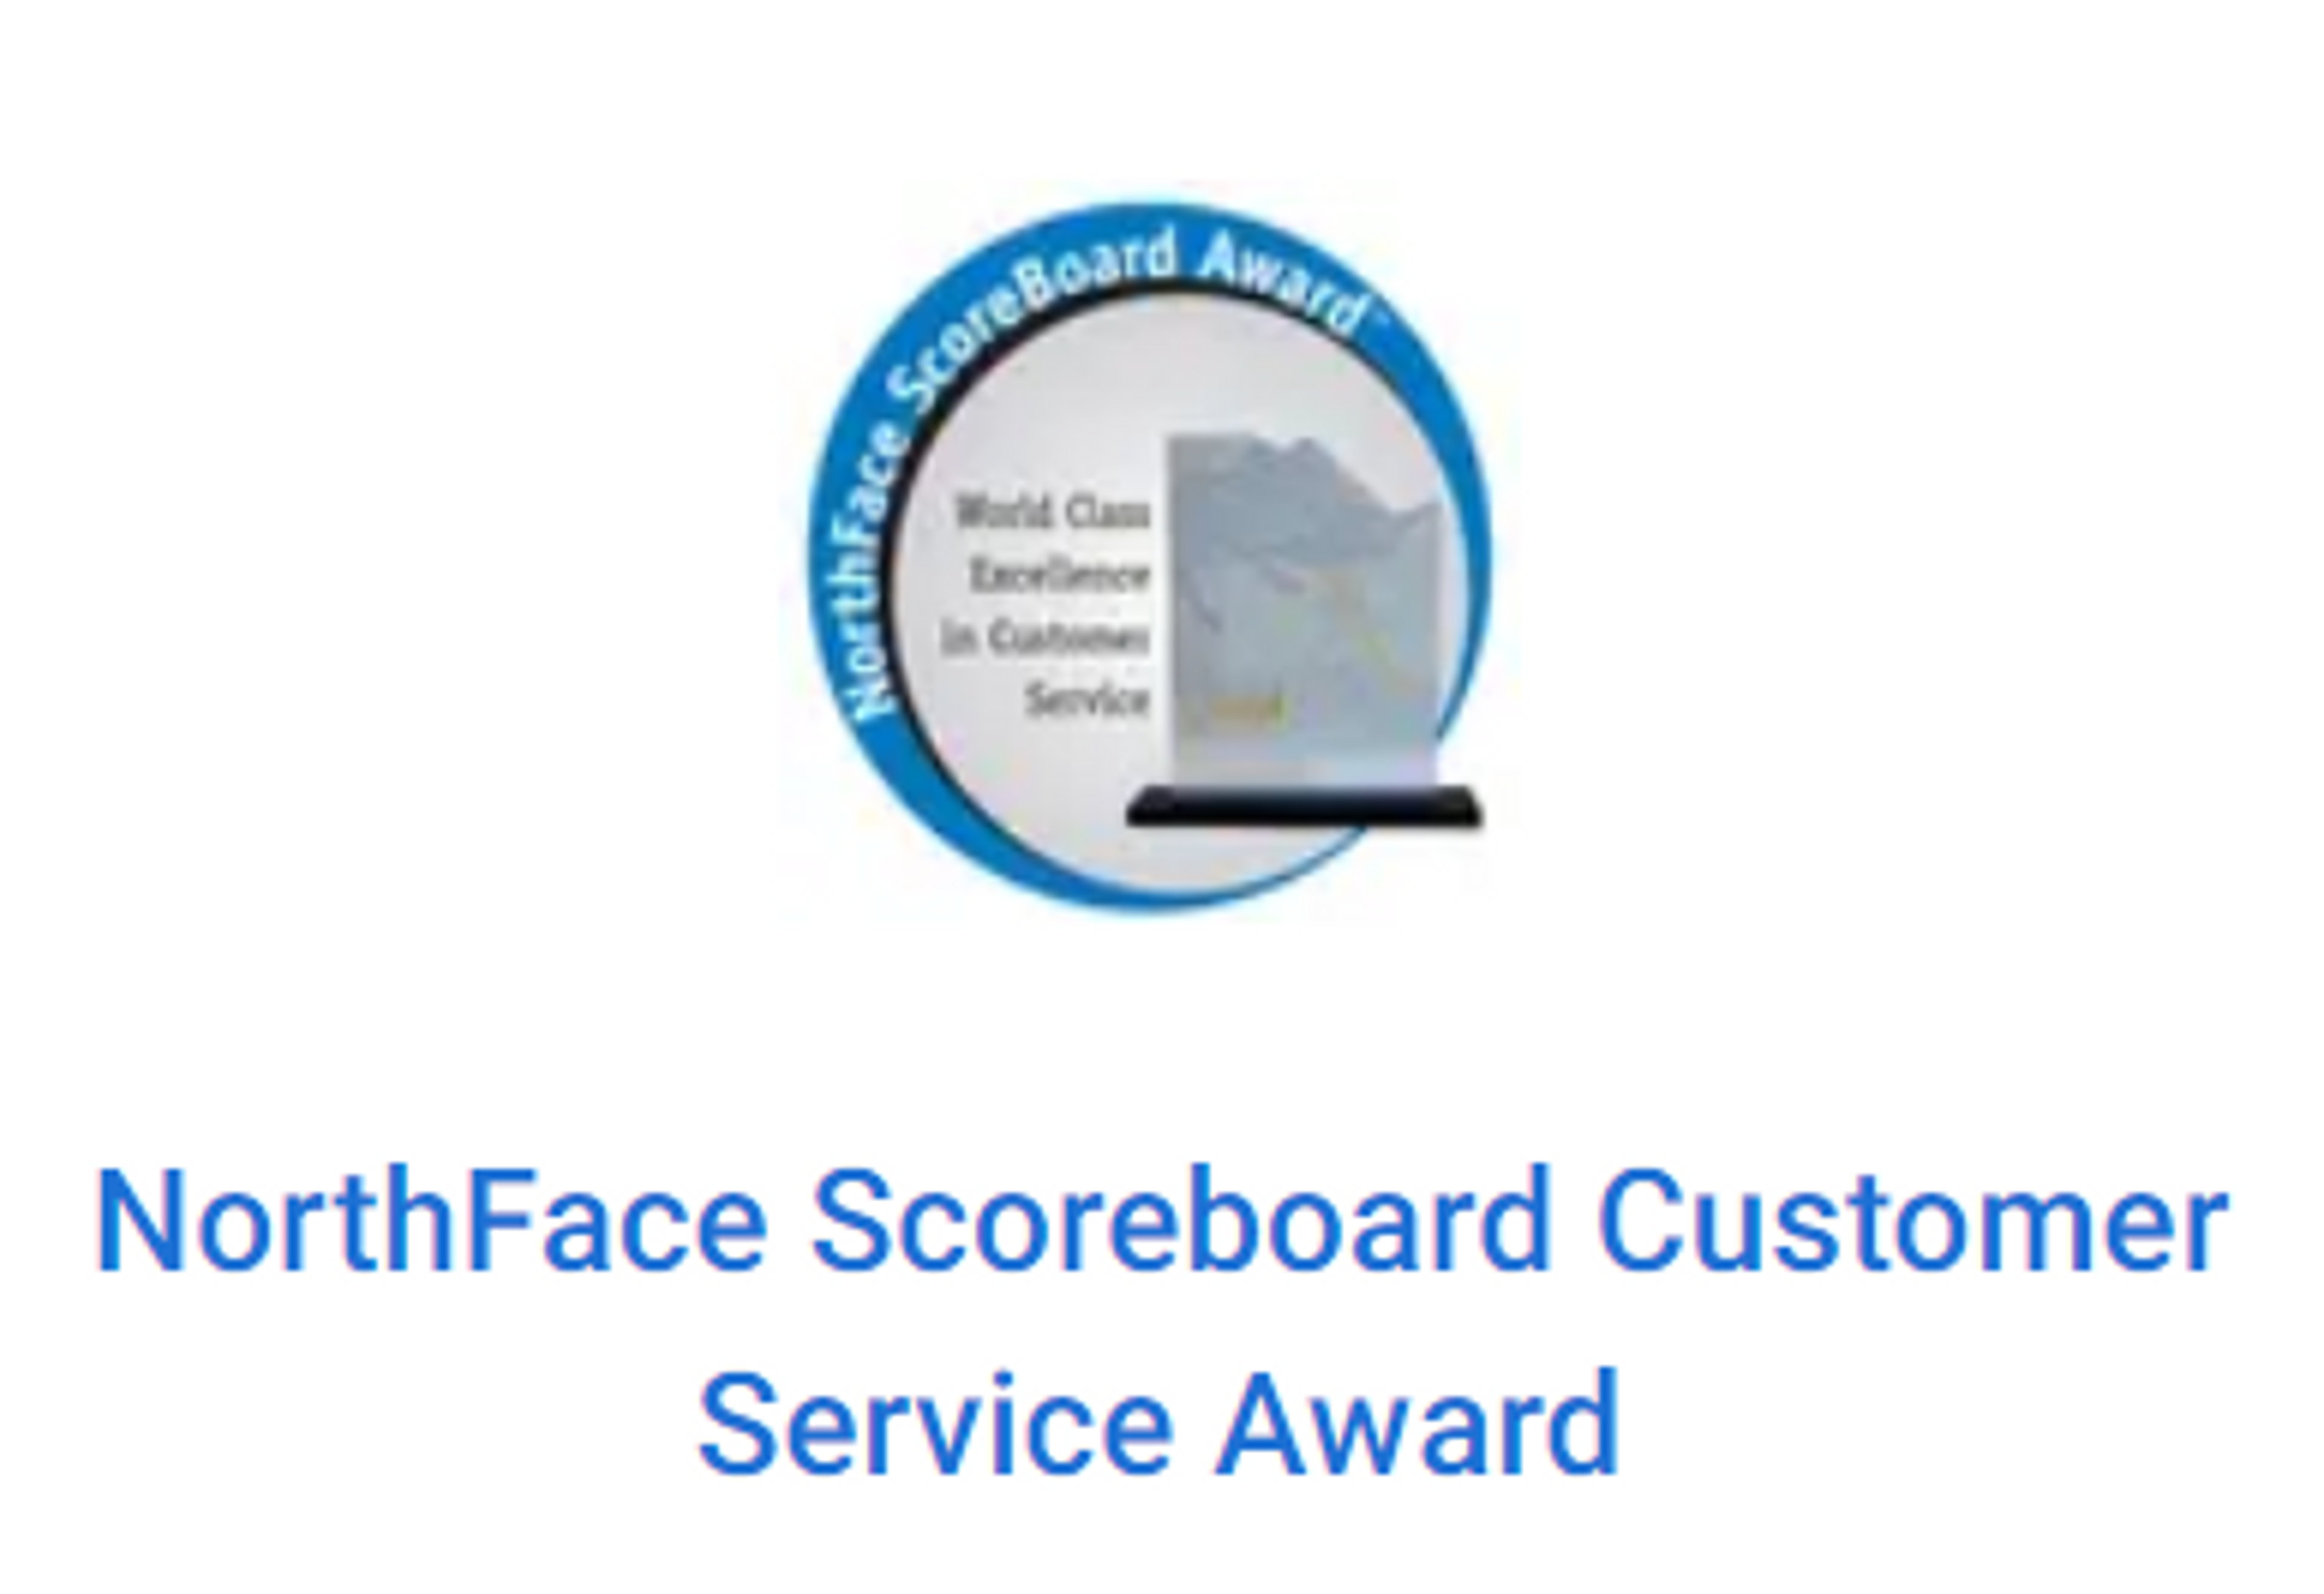 NorthFace ScoreBoard Customer Service Award